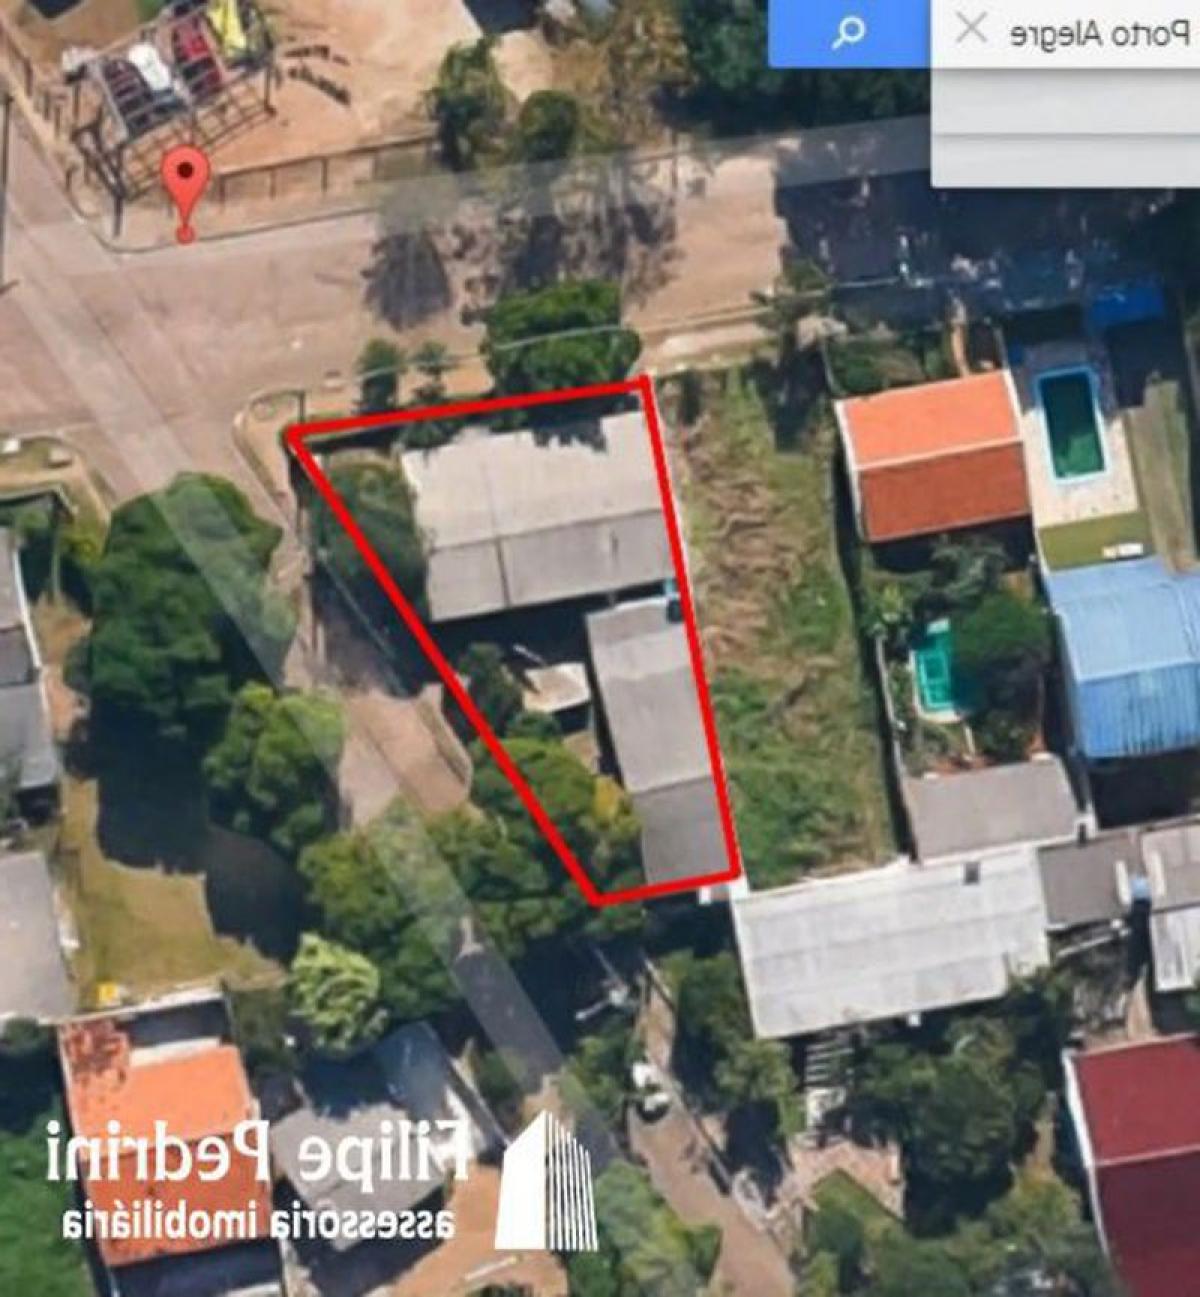 Picture of Residential Land For Sale in Porto Alegre, Rio Grande do Sul, Brazil